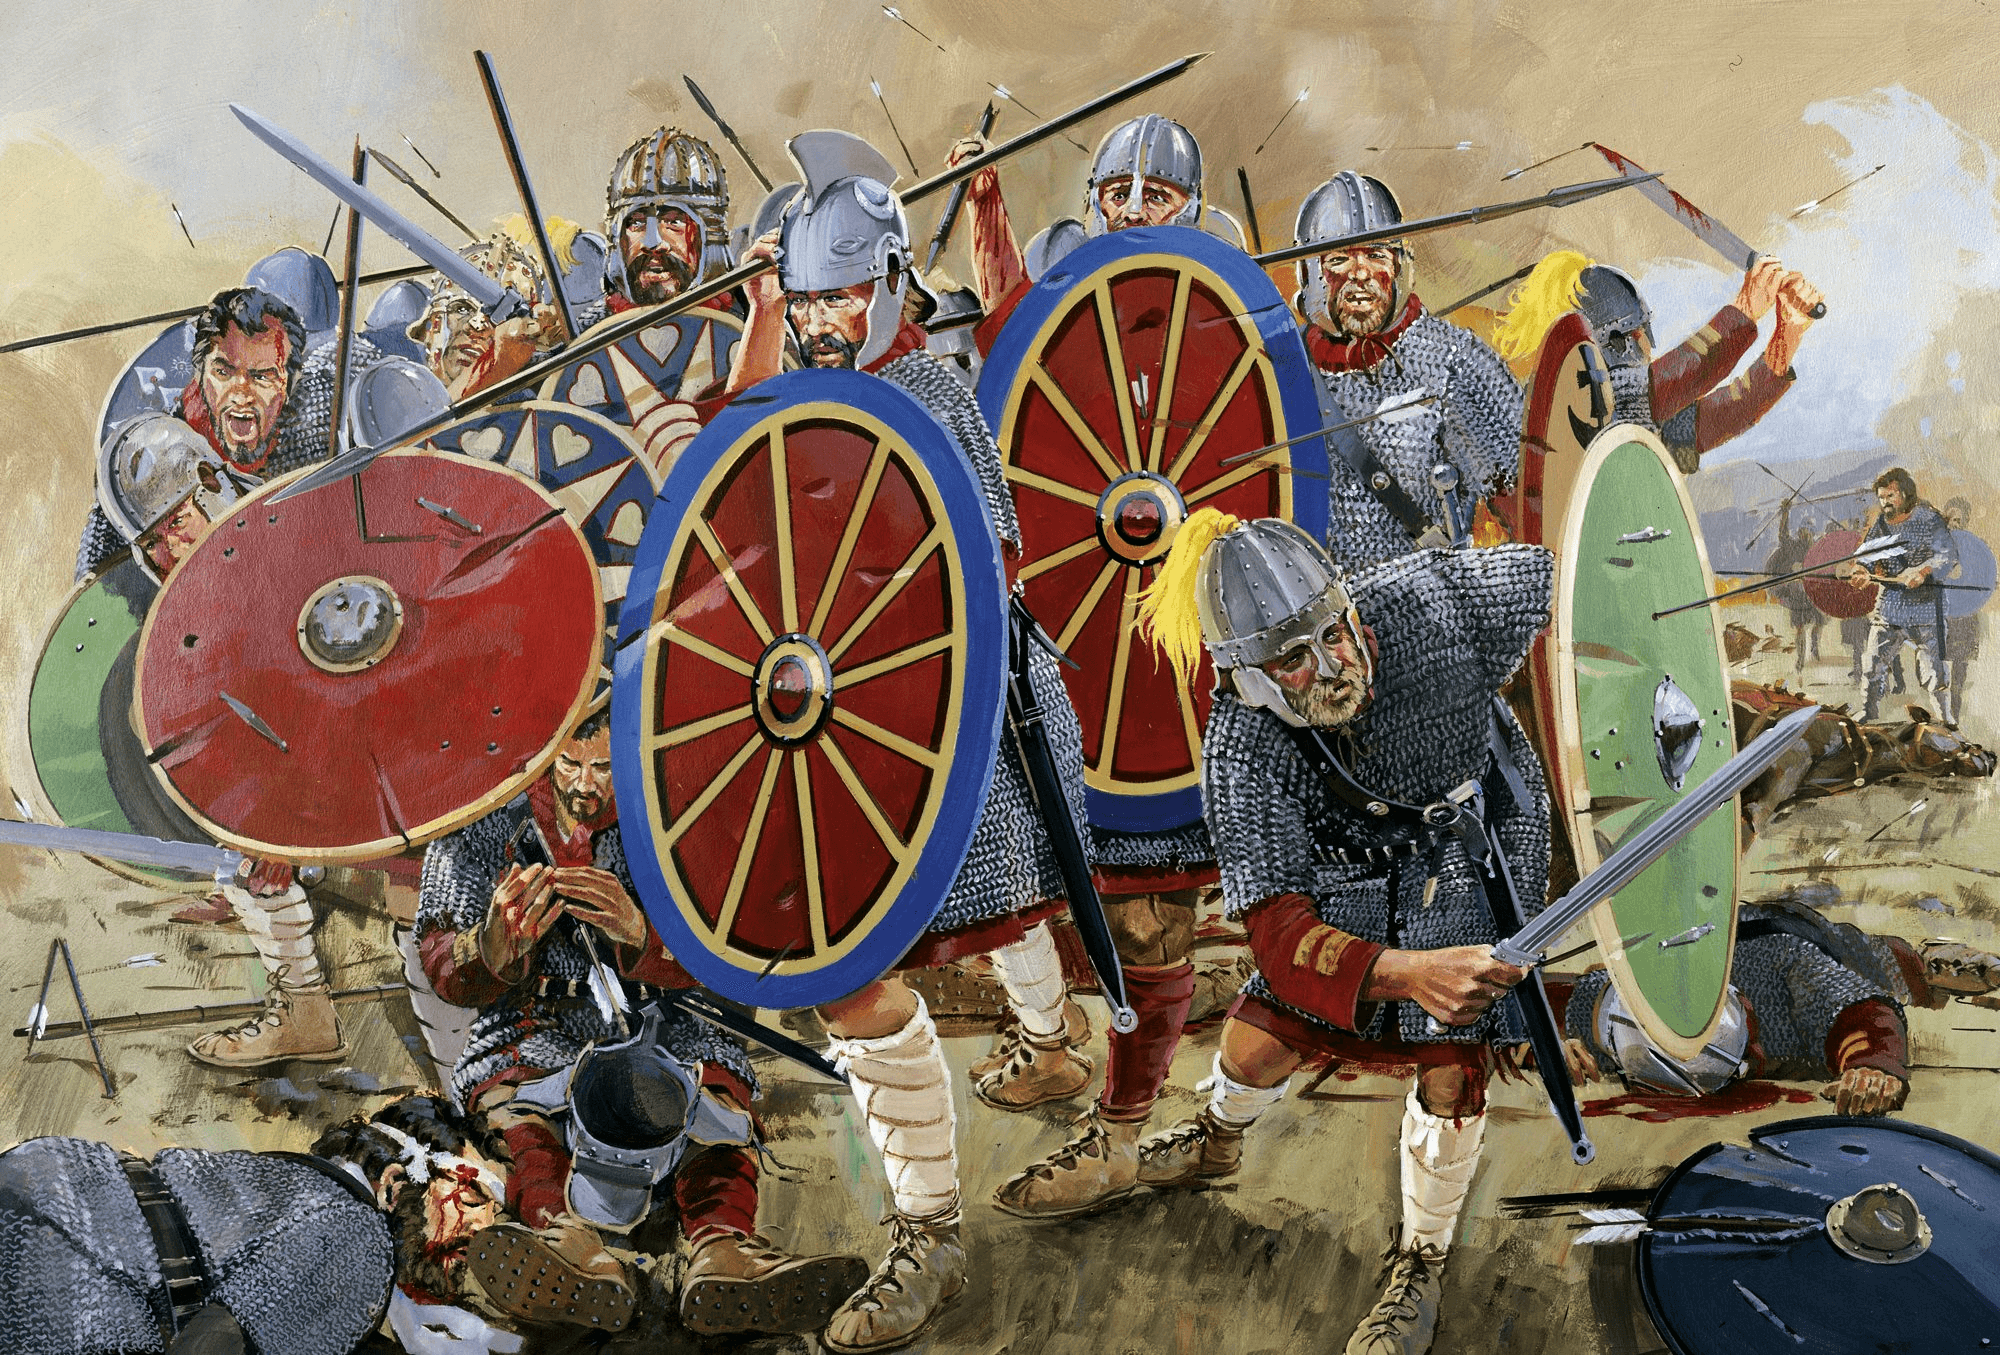 Войны между римлянами. Битва у Адрианополя 378. Сражение при Адрианополе 378. Император Валент битва при Адрианополе. Адрианопольская битва 378 год.